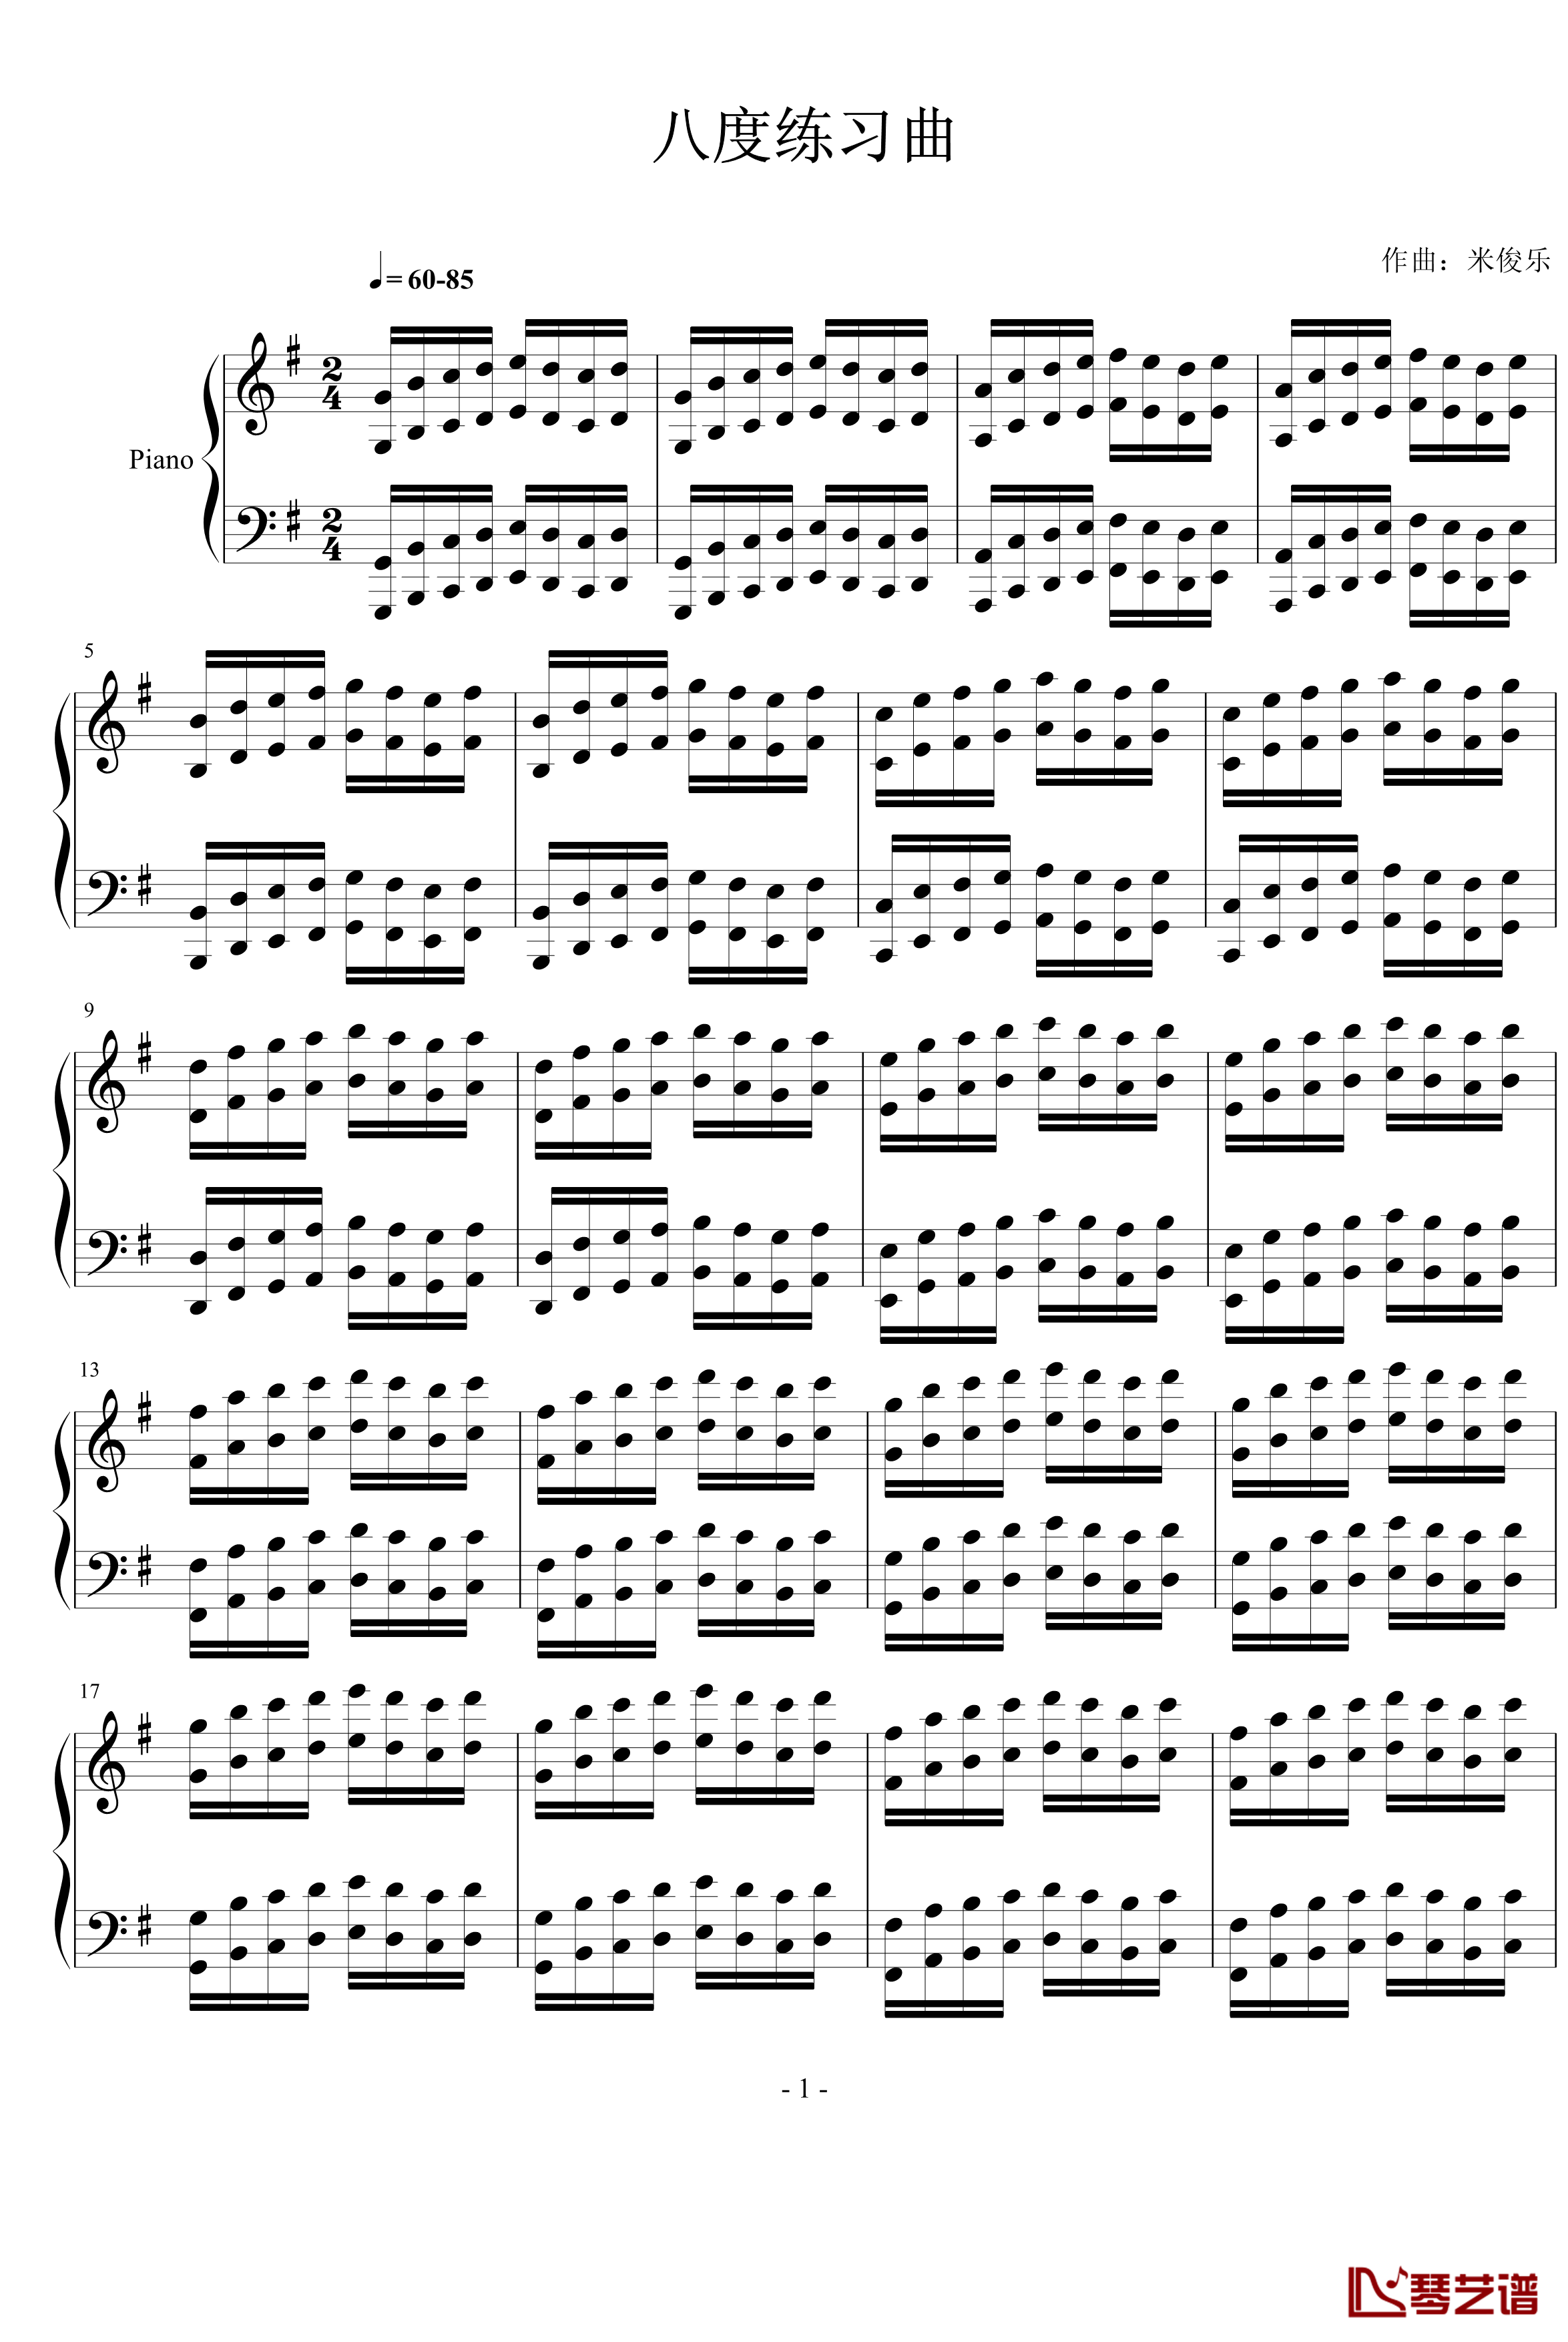 八度练习曲钢琴谱-米俊乐1